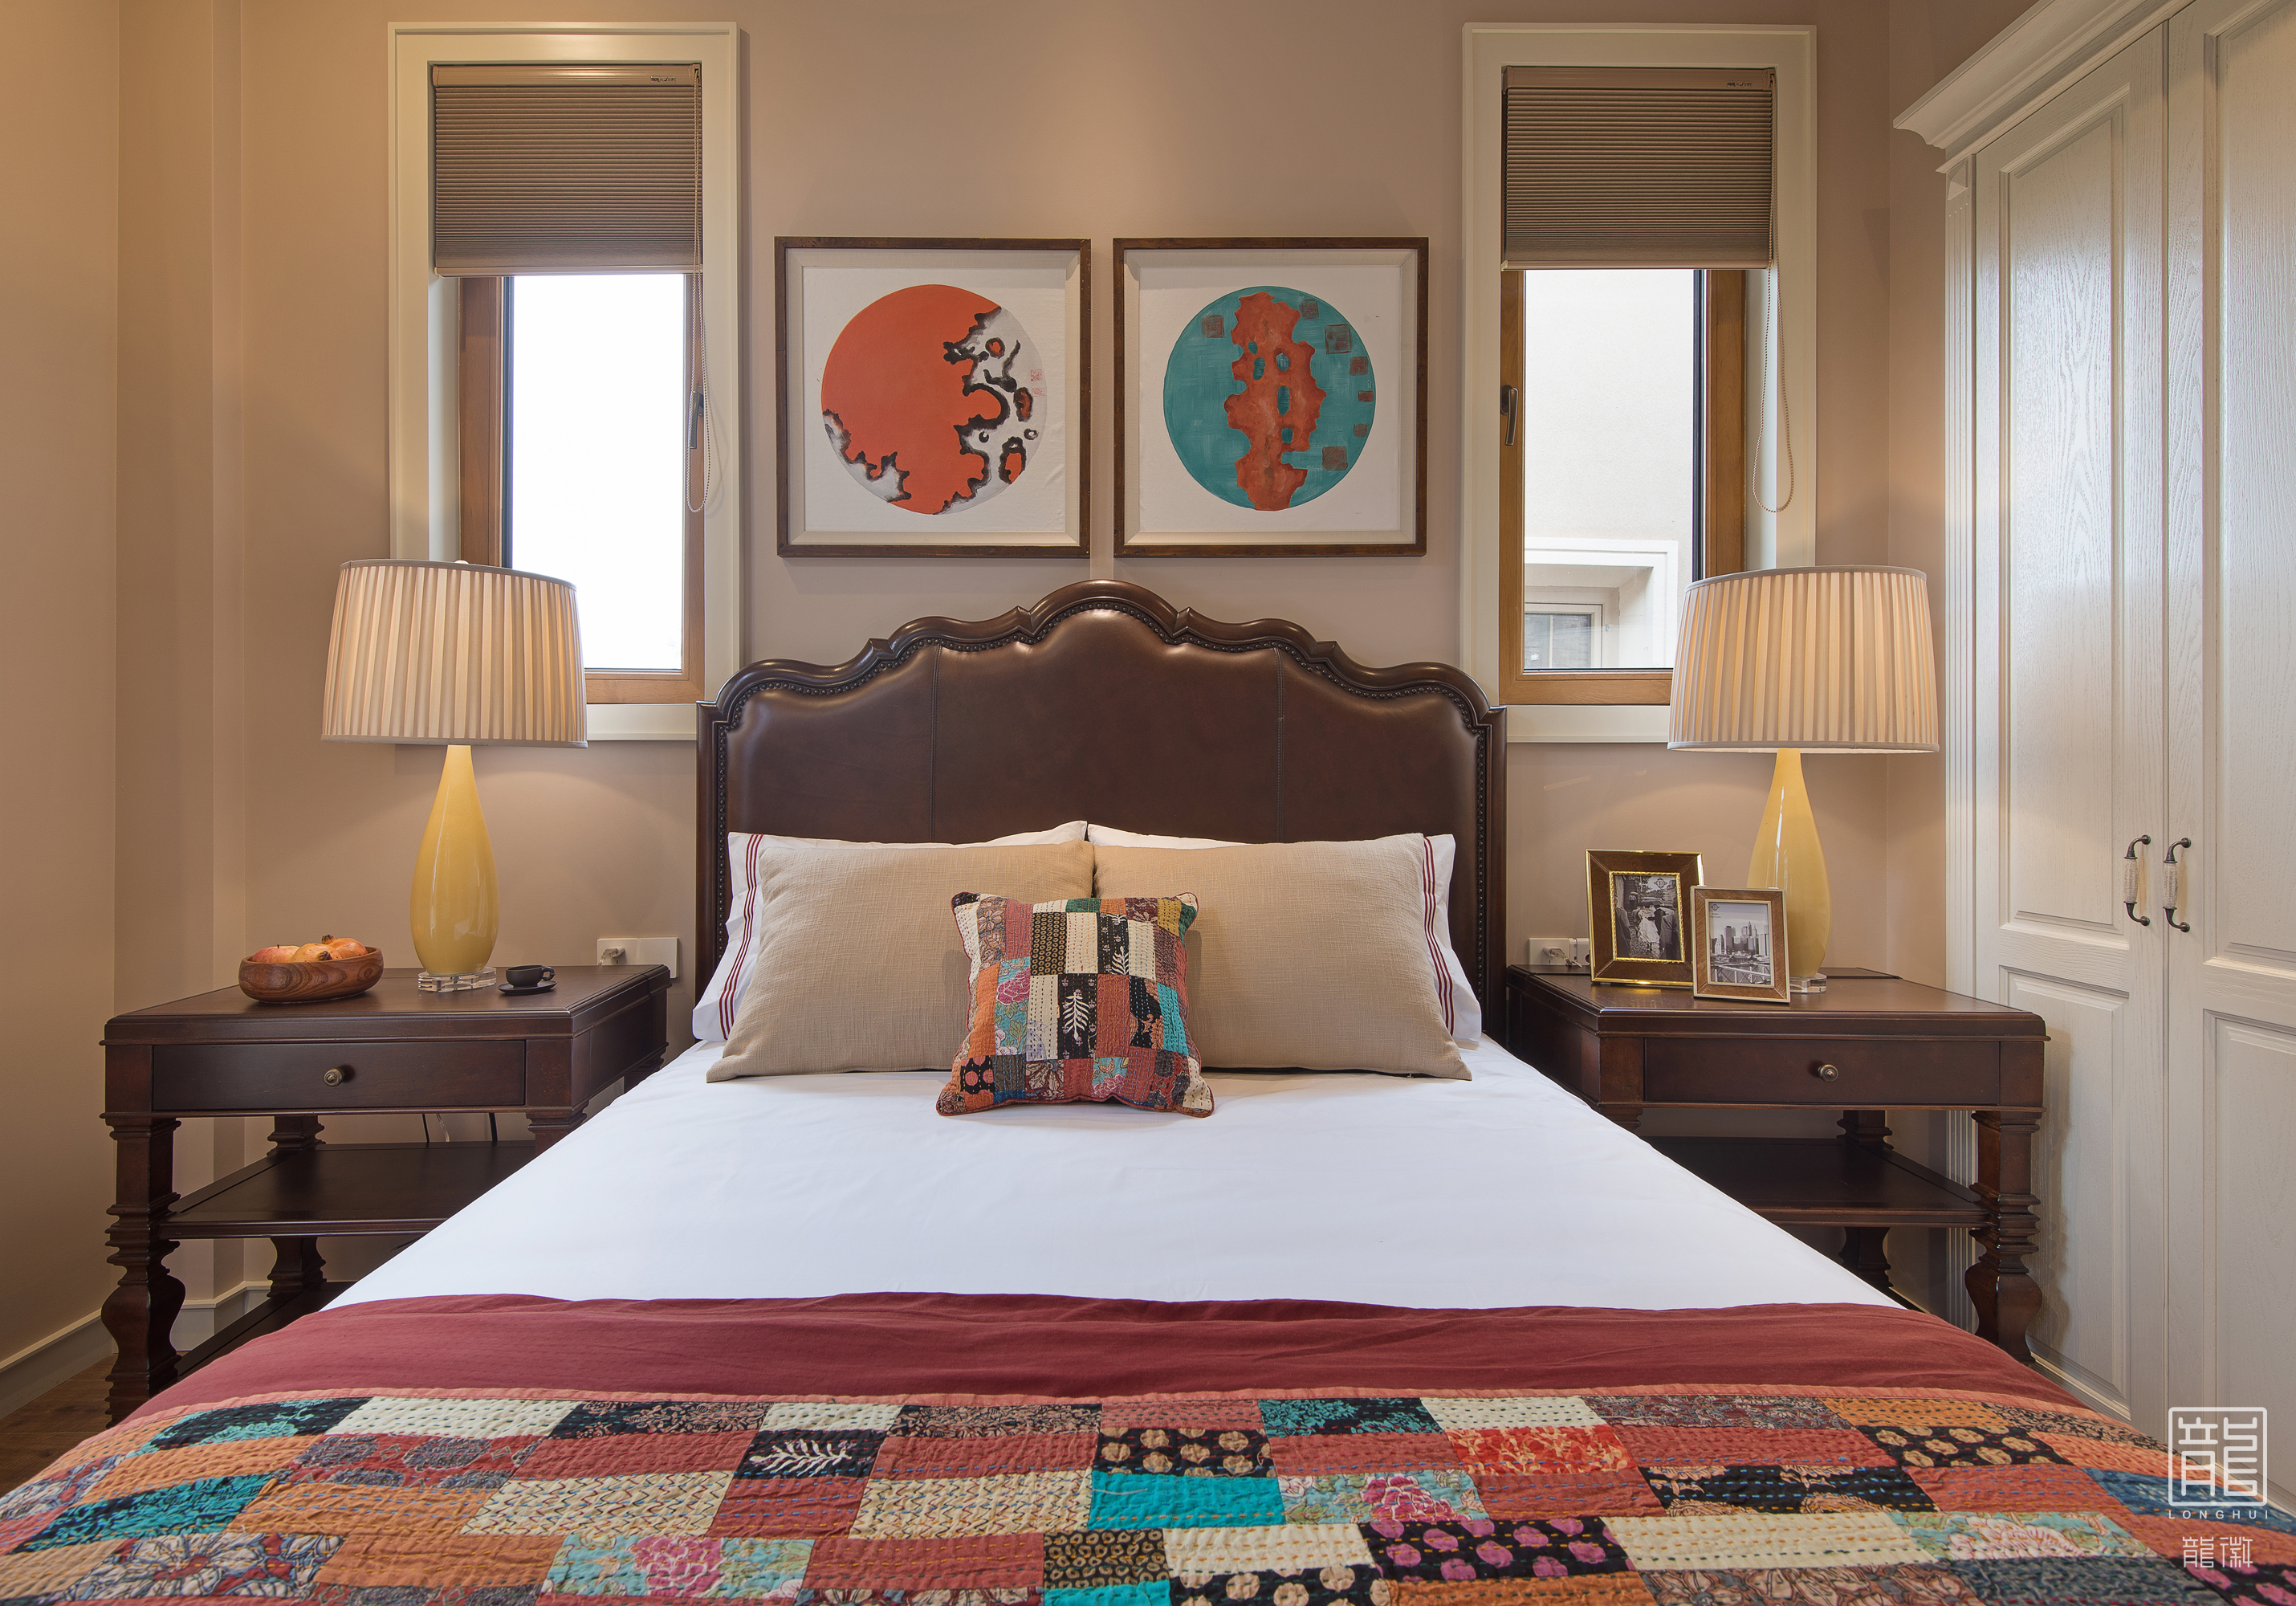 别墅 休闲 美式 心灵安放 卧室图片来自龙徽设计在安放的分享